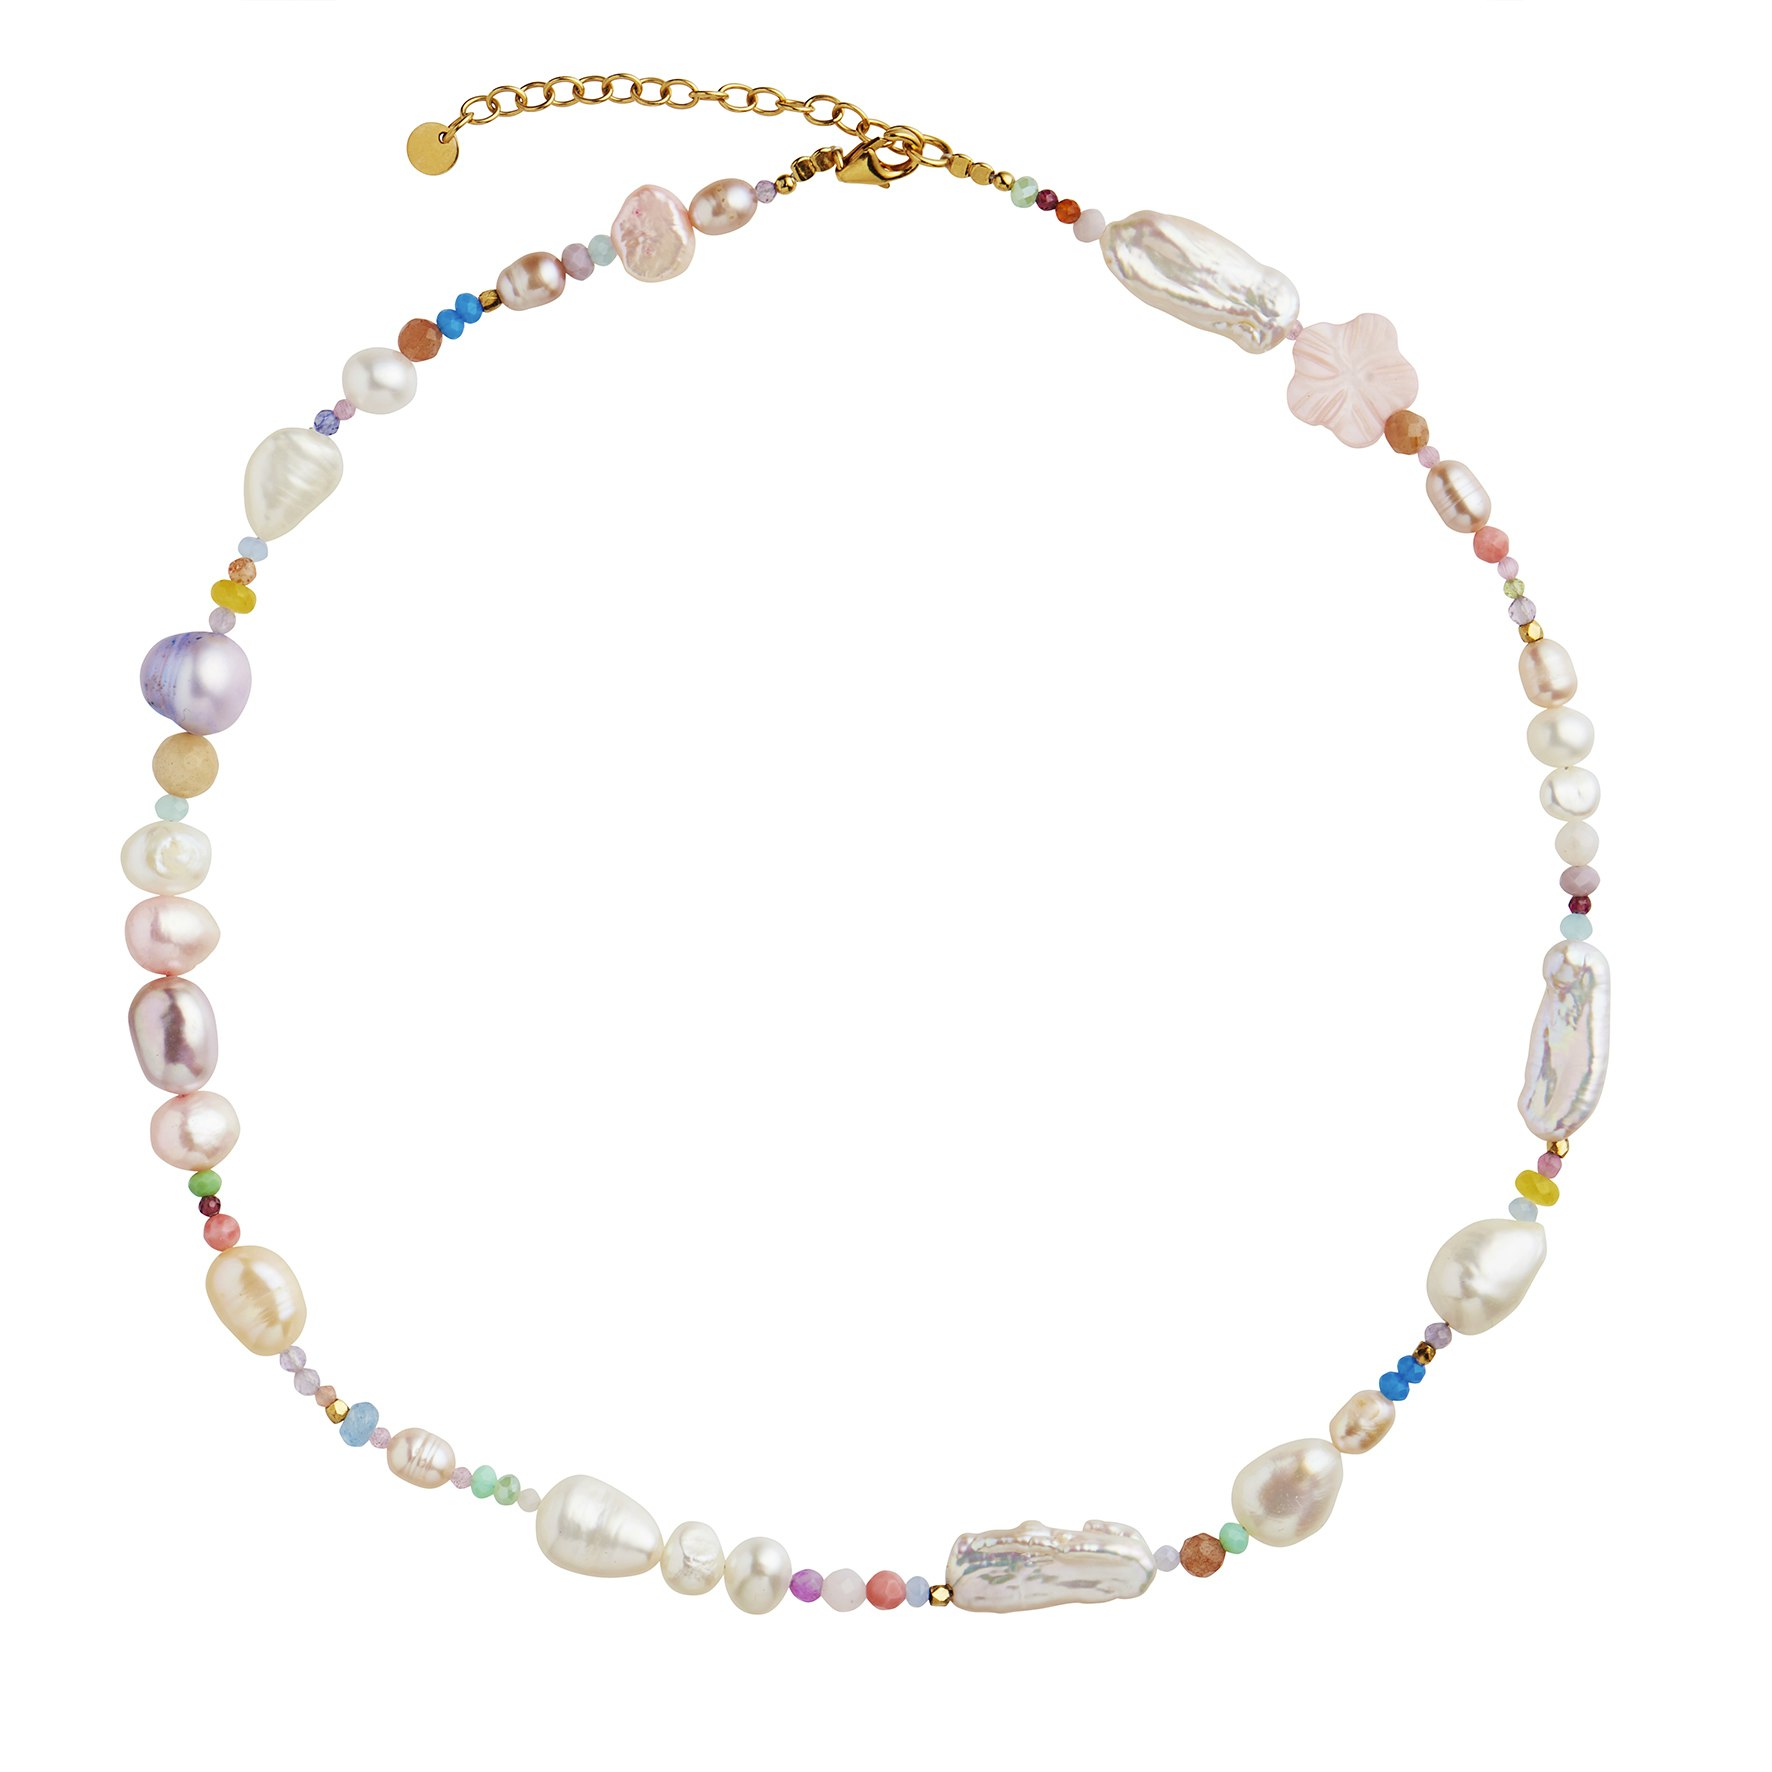 Cherry Garden Necklace - Pale Pastel Mix von STINE A Jewelry in Vergoldet-Silber Sterling 925